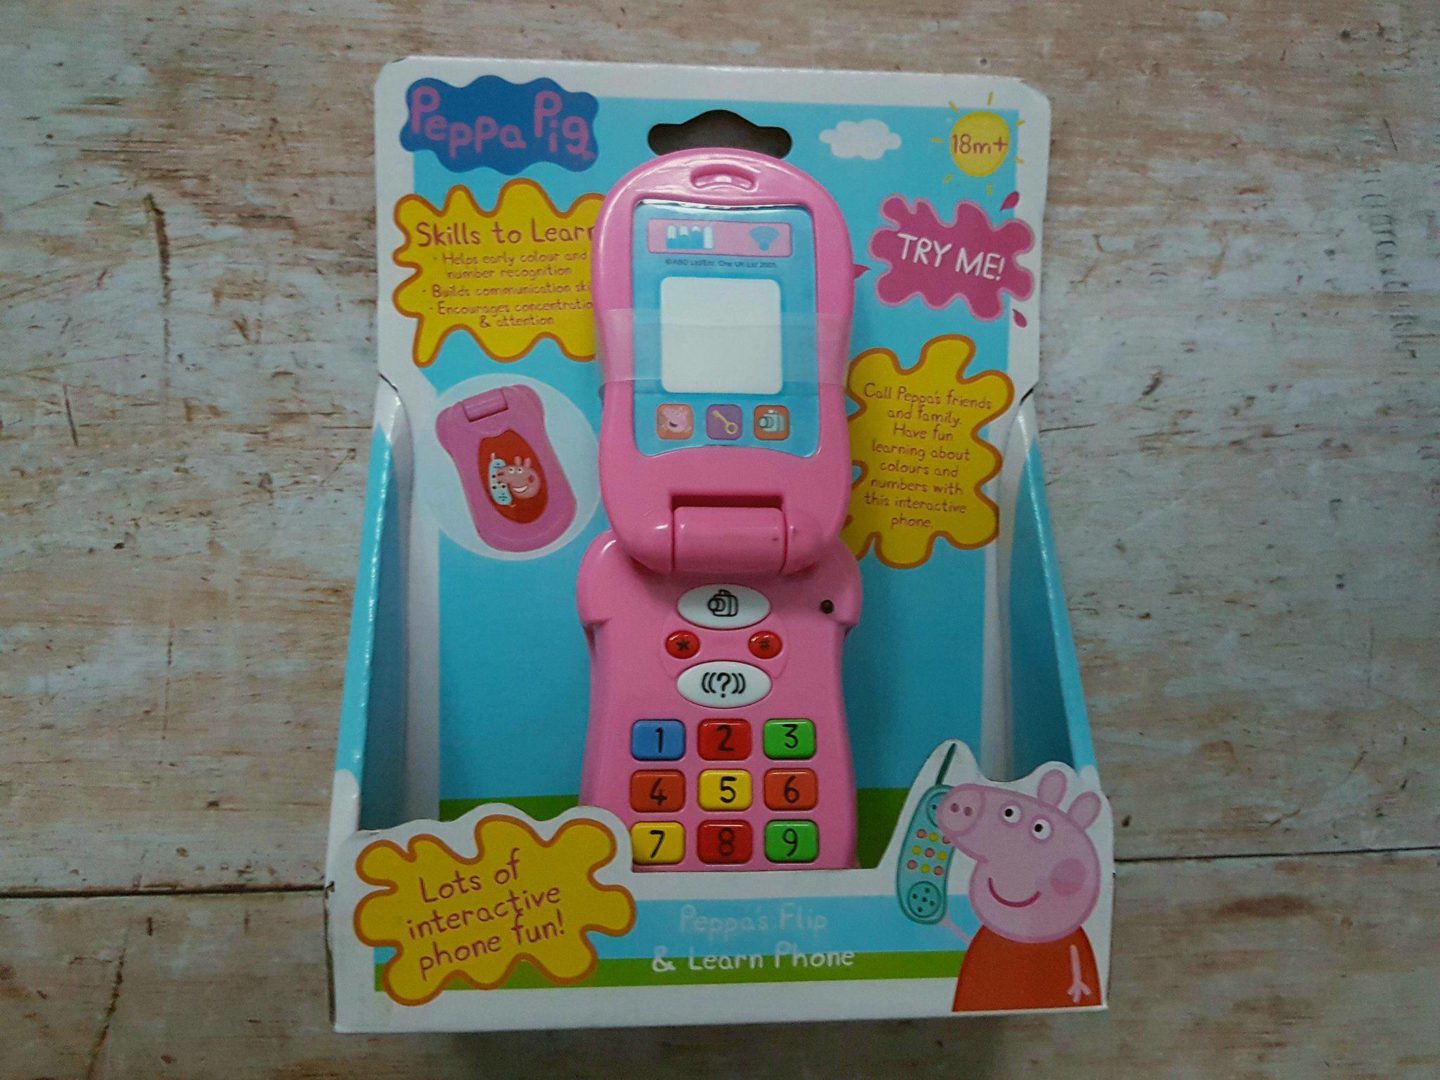 Peppa Pig toy phone